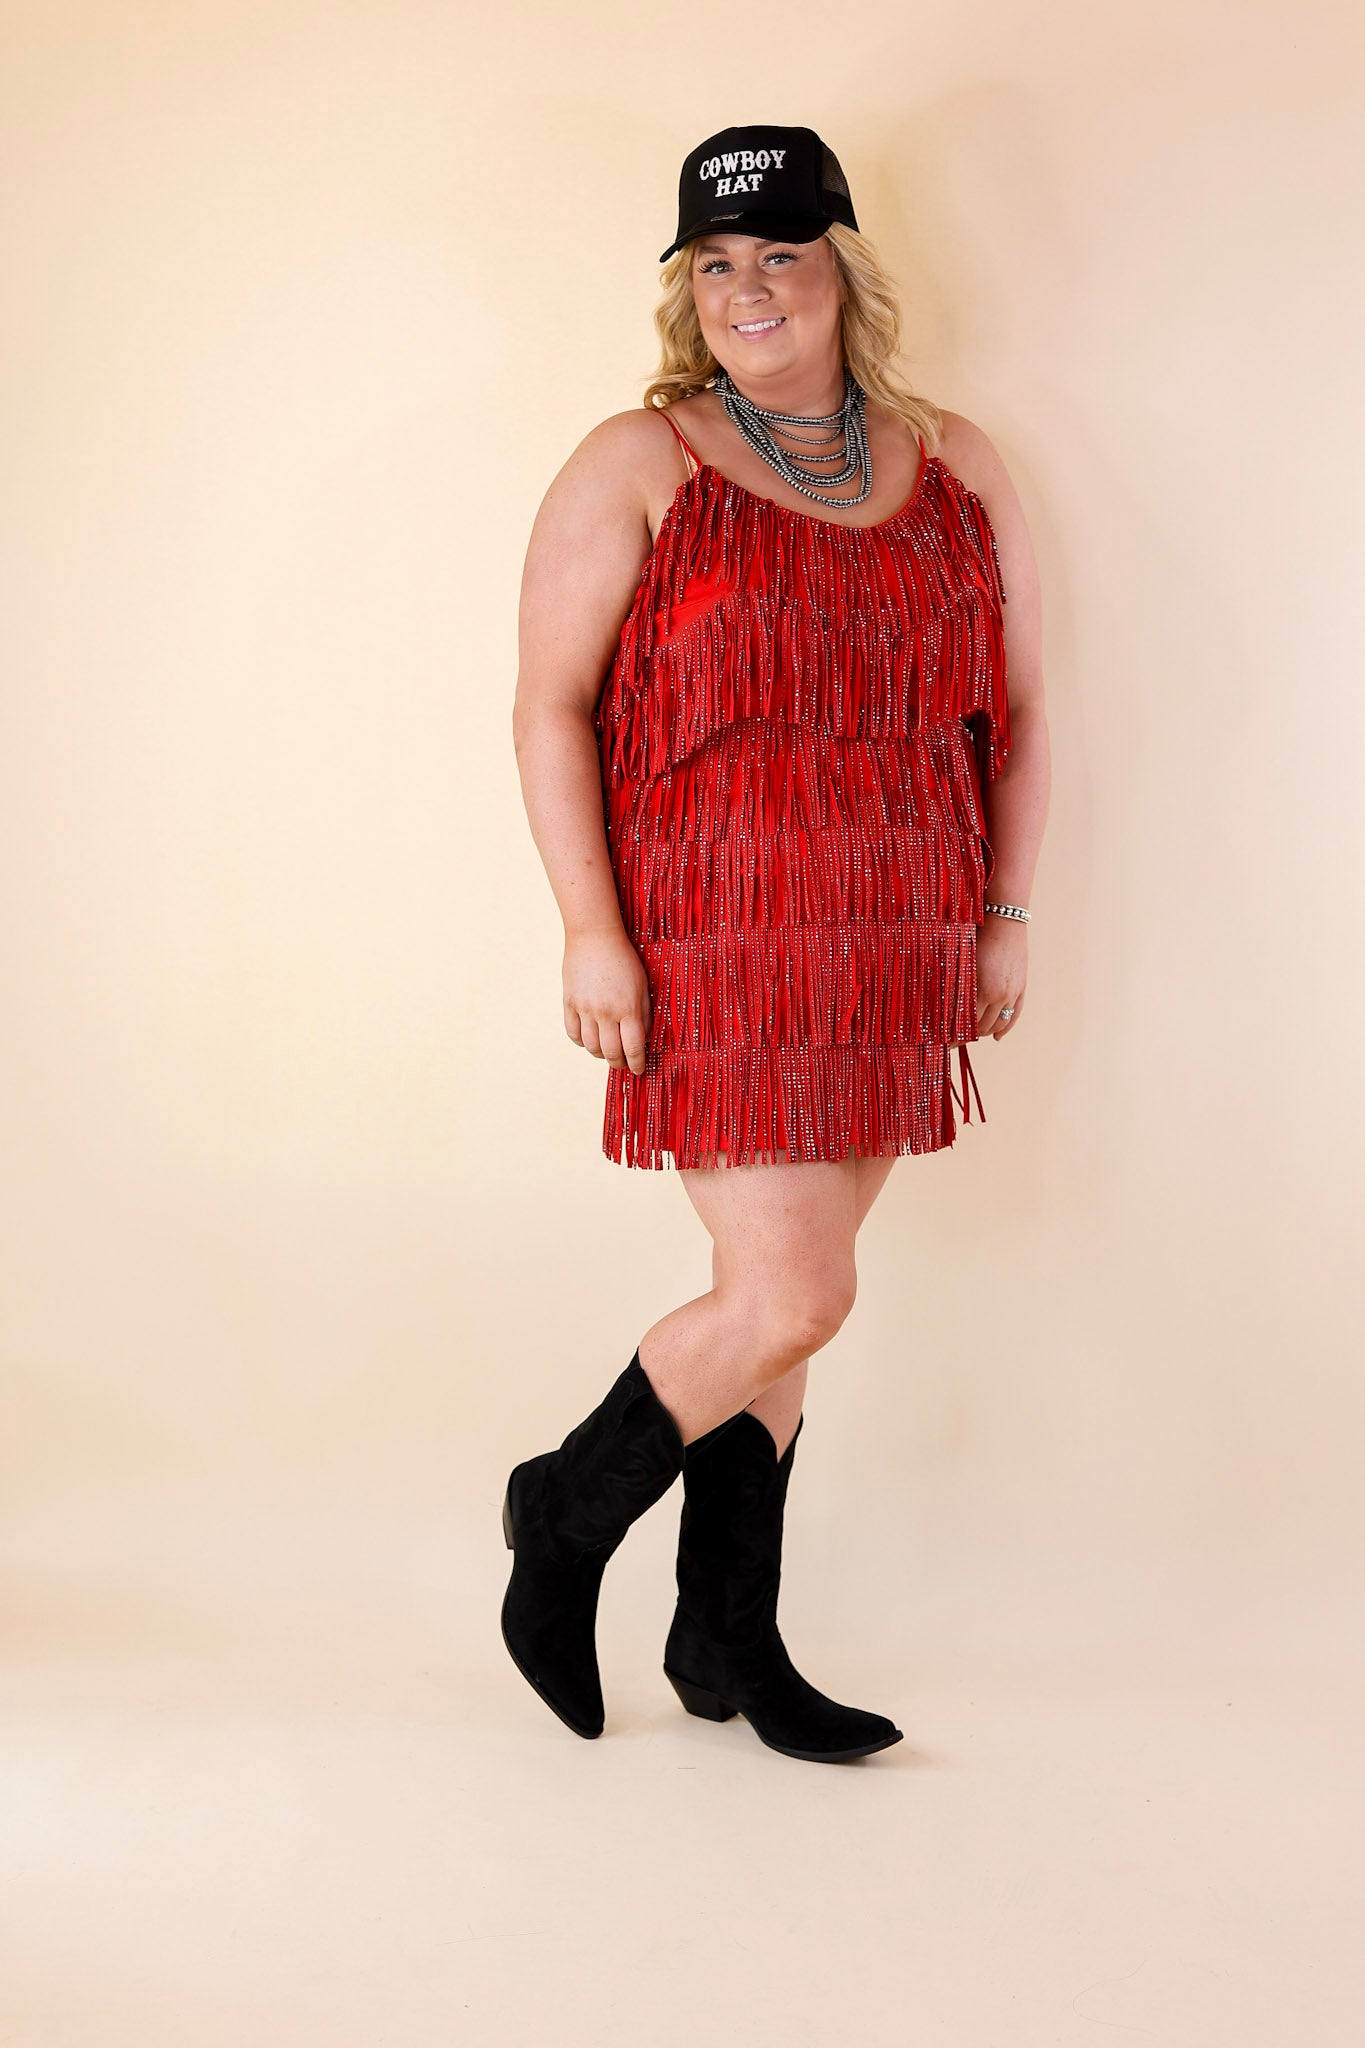 Cowboy Killer Crystal Fringe Dress in Red - Giddy Up Glamour Boutique